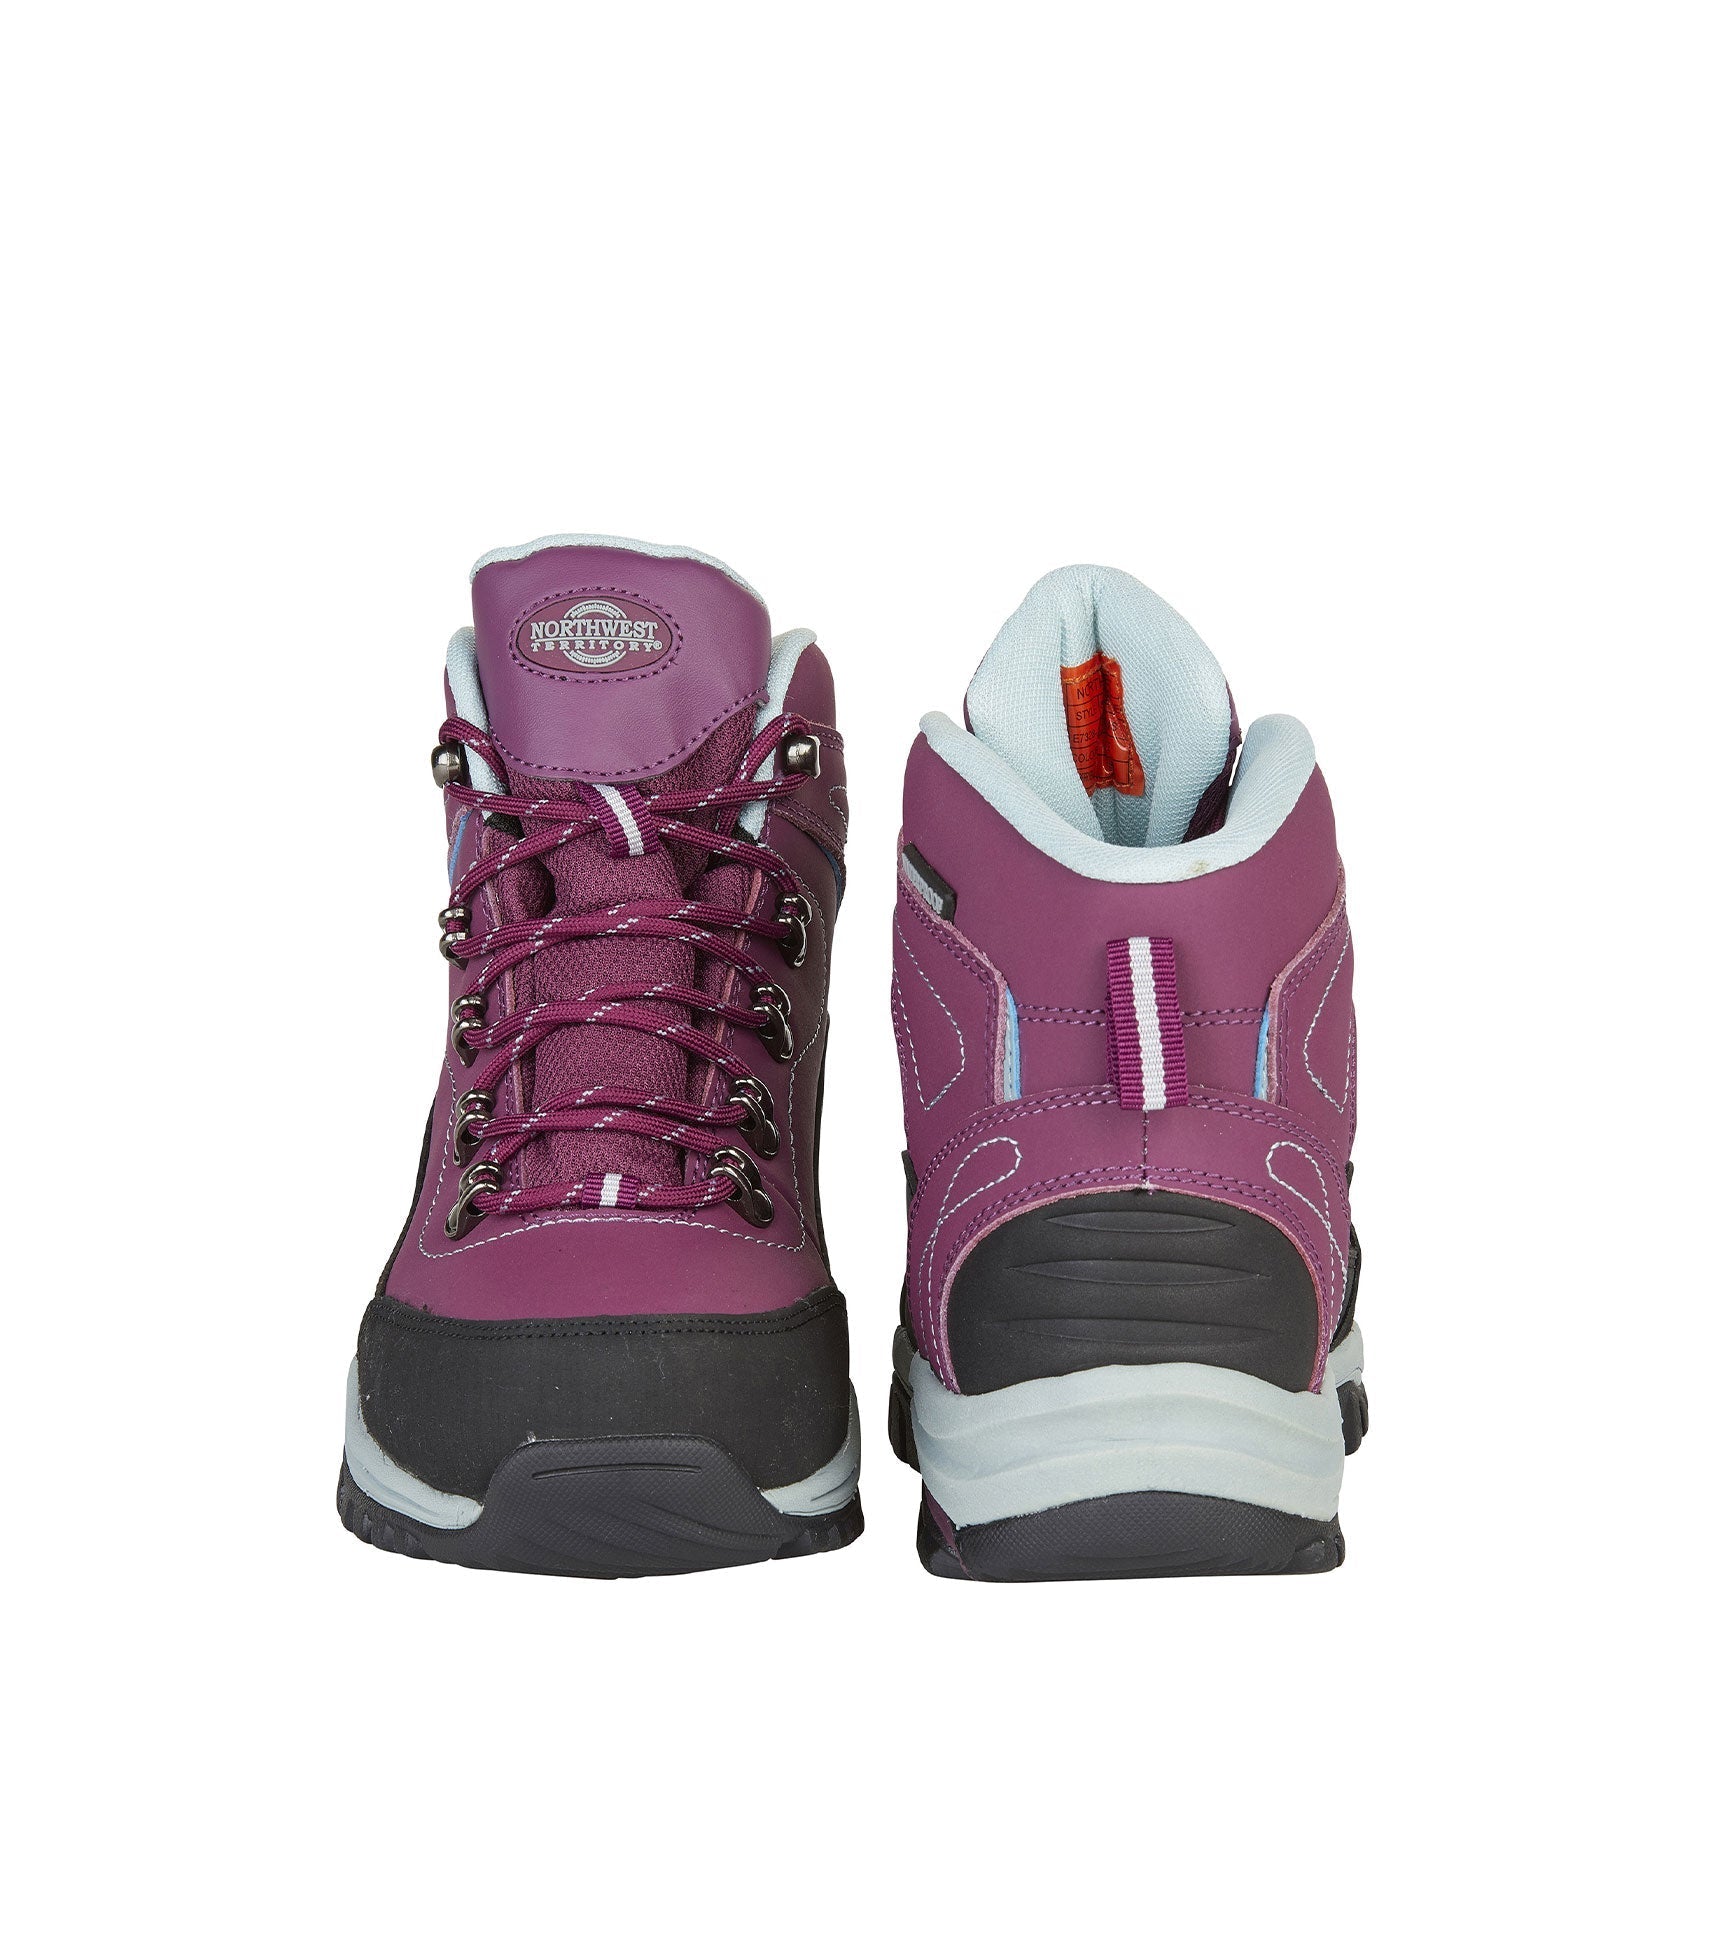 Women's Waterproof Walking Boots - Women's Waterproof Walking Boots